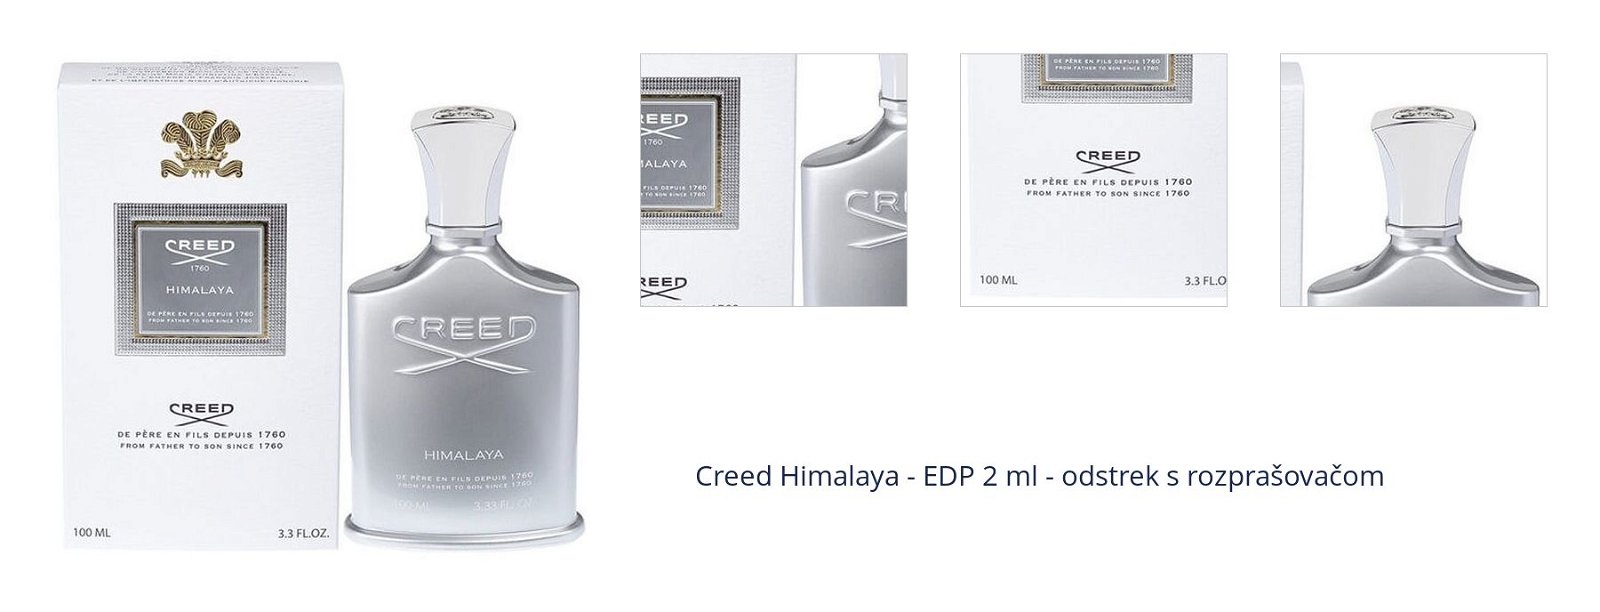 Creed Himalaya - EDP 2 ml - odstrek s rozprašovačom 1